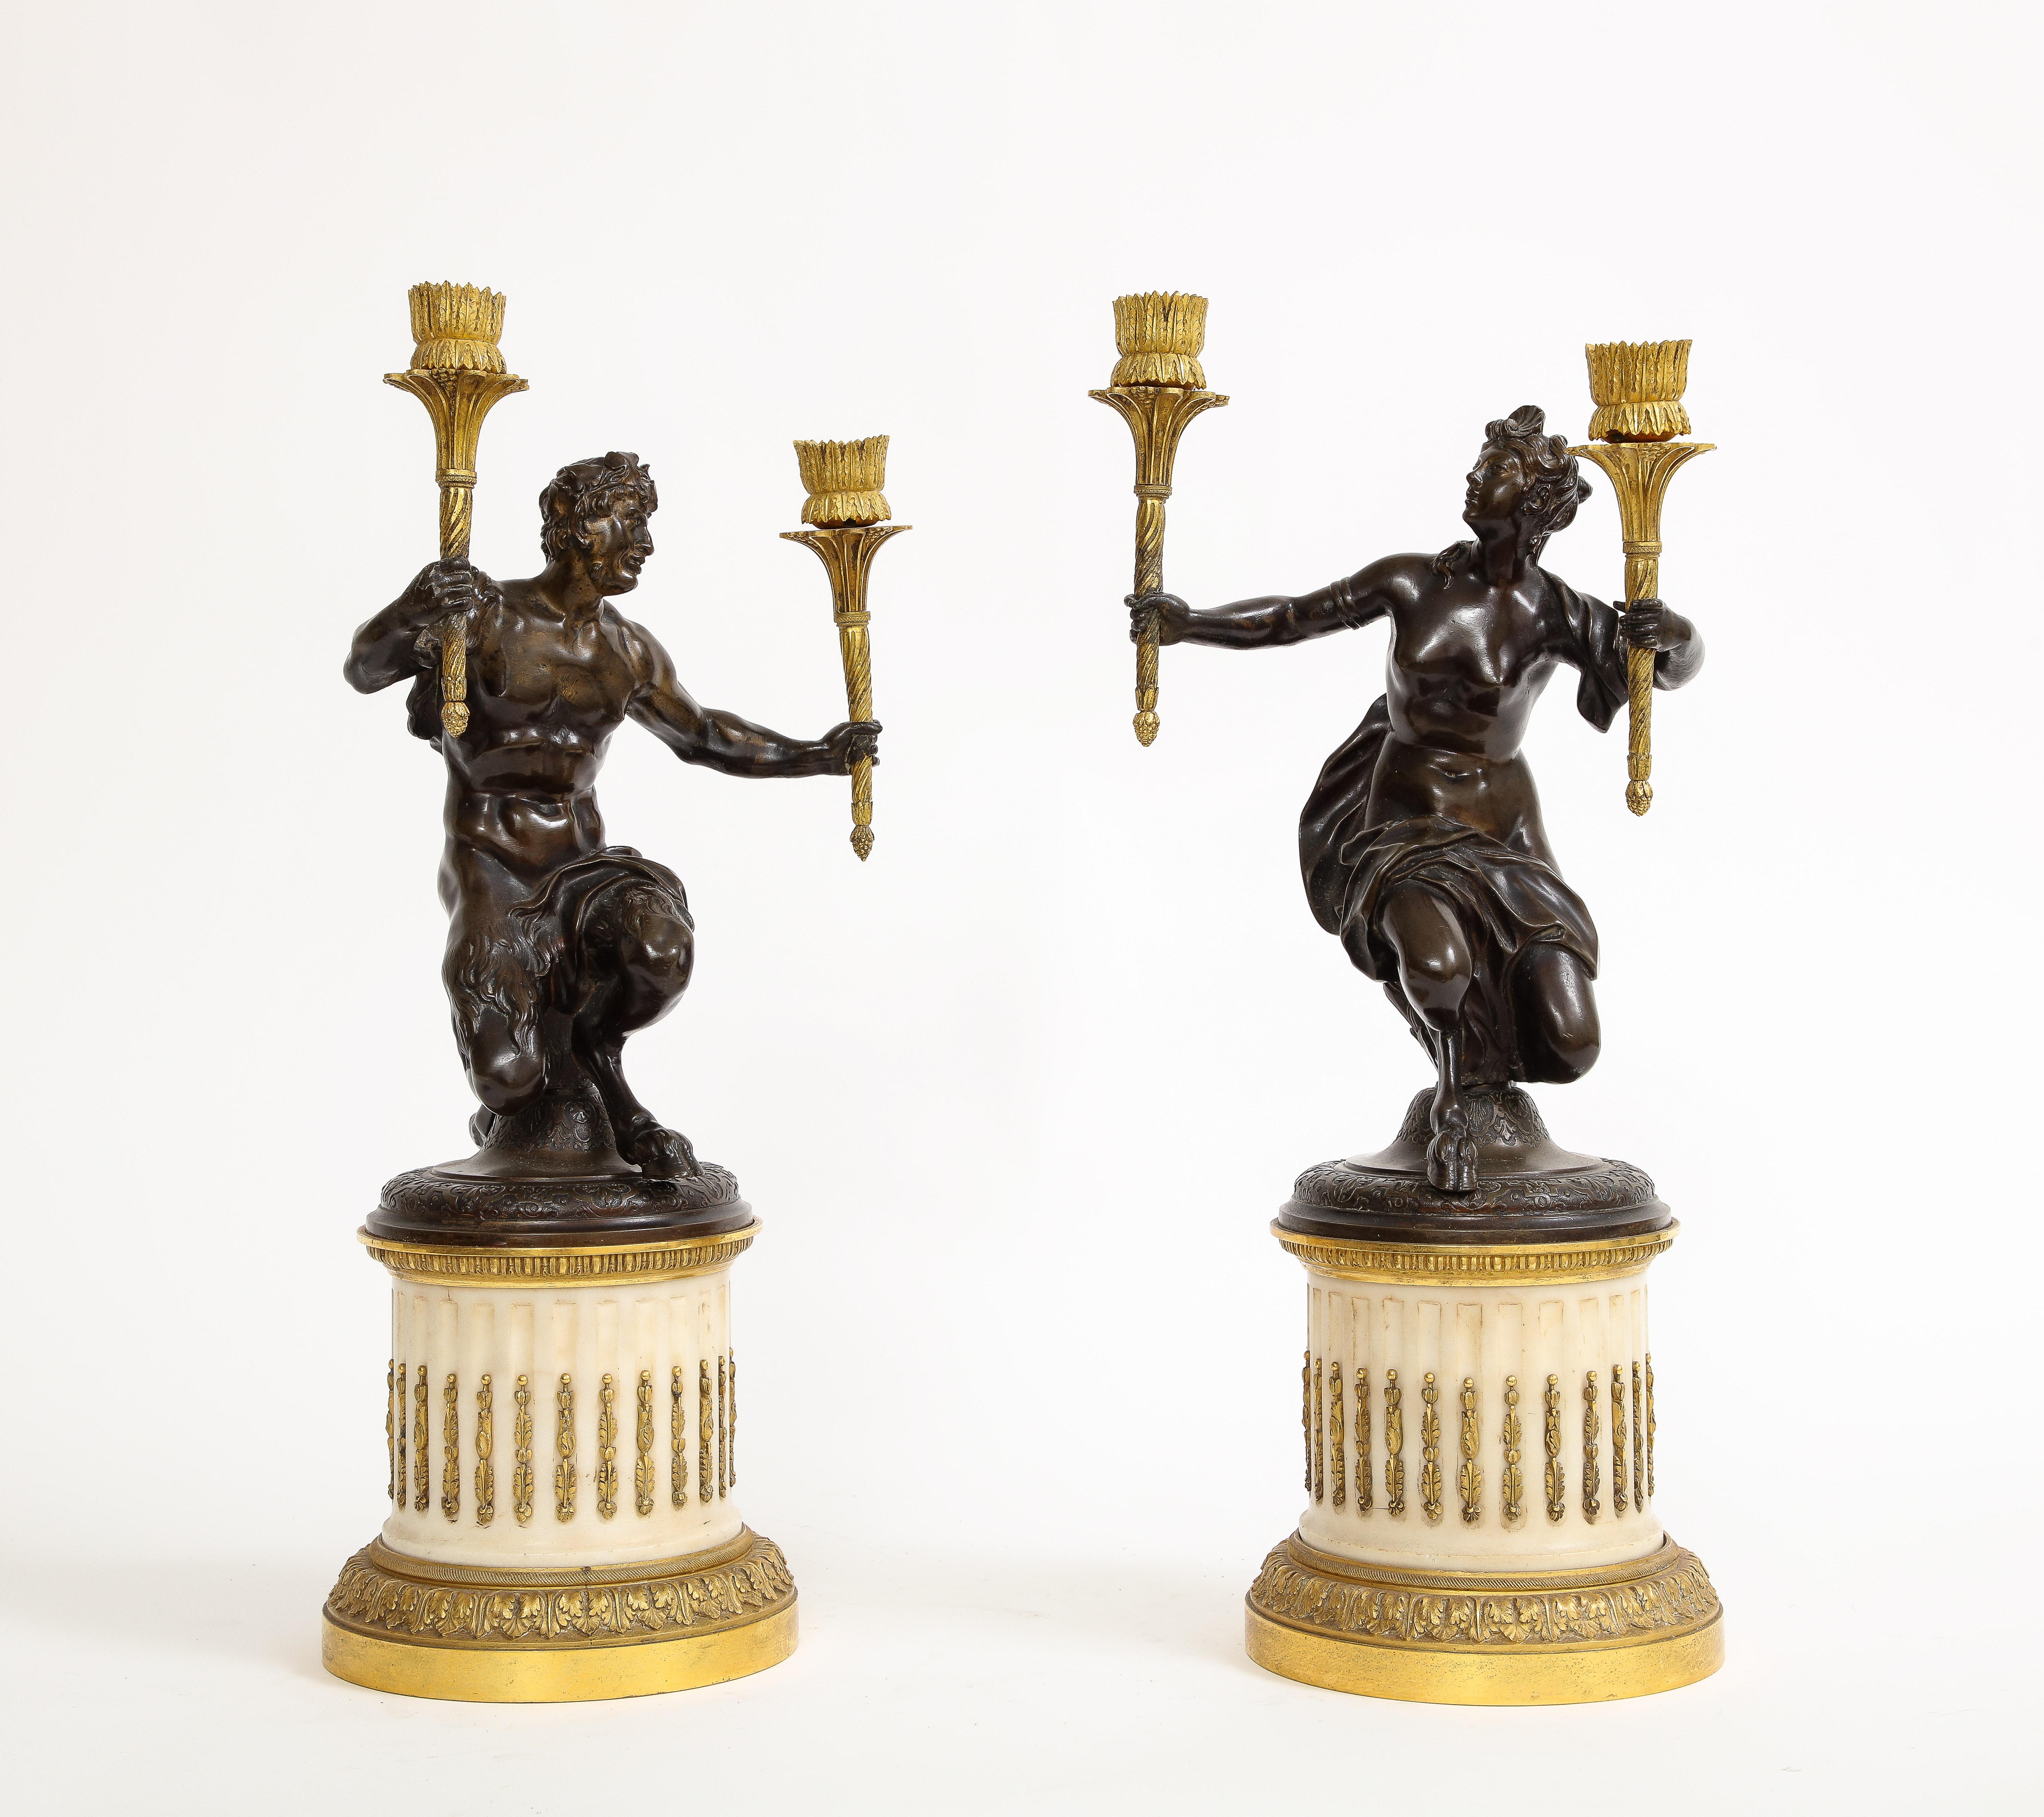 Ein exquisites Paar von Louis XVI Periode Figural patiniert und Ormolu Kandelaber auf Marmor Sockel.  Diese bemerkenswerten Kandelaber verkörpern die künstlerische Pracht der Epoche Ludwigs XVI. Die patinierten Bronzeskulpturen sind von den